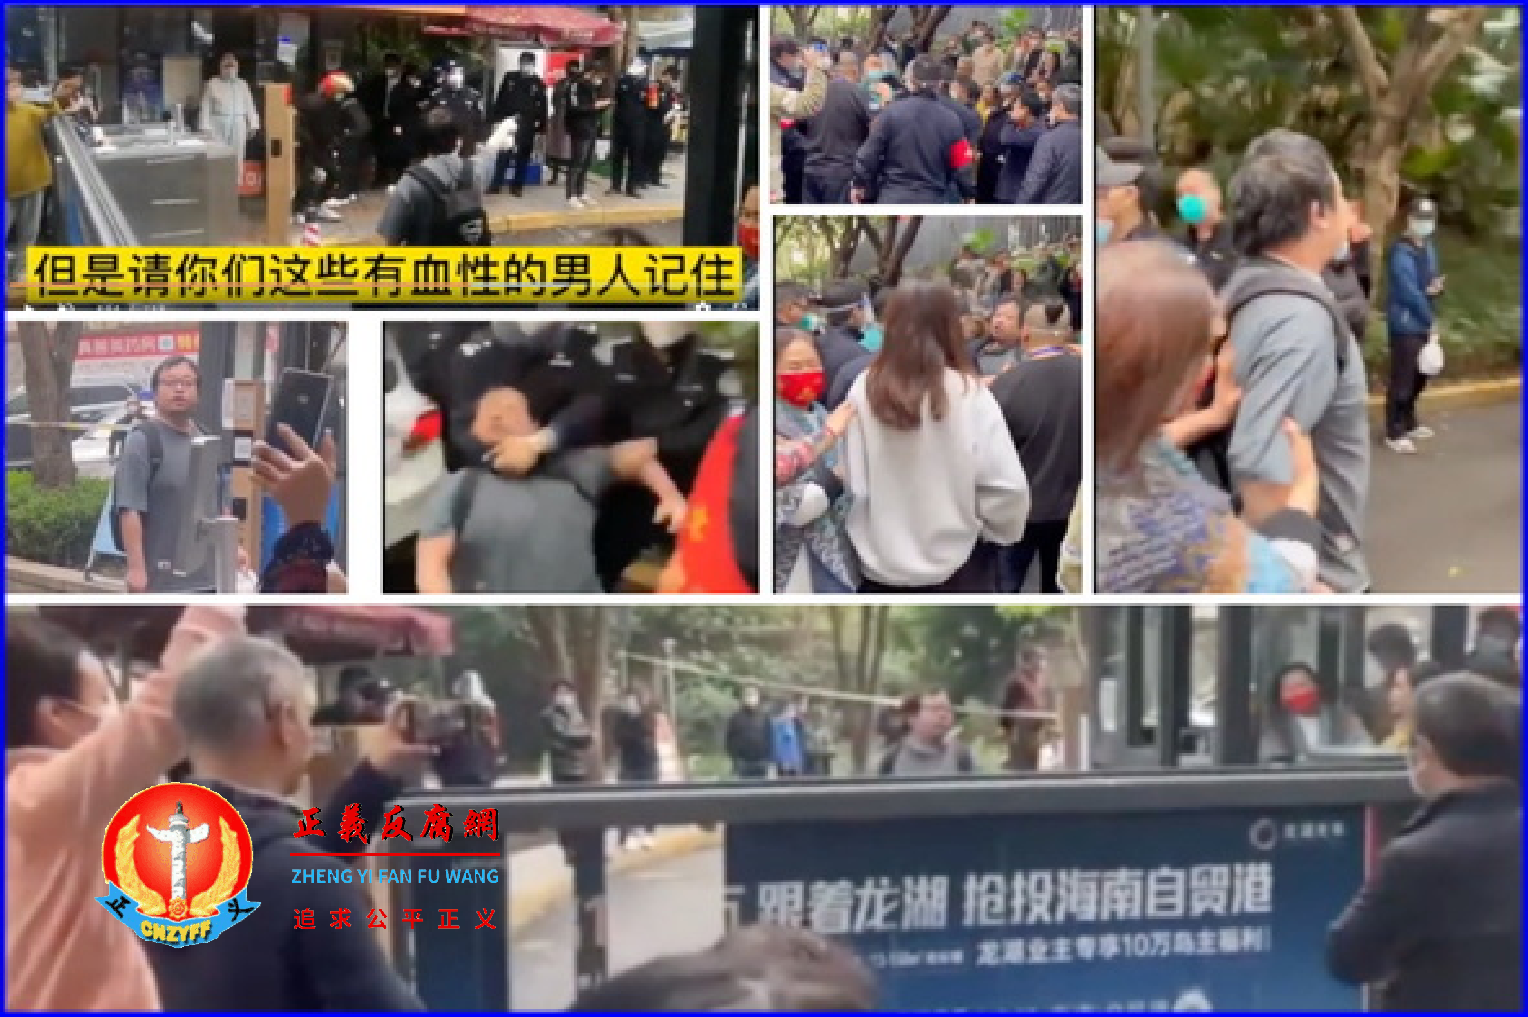 2022年11月24日，一位身背超人背包的男子在重庆某小区门口并喊出“不自由毋宁死”口号，围观人群热烈响应，称其为“大英雄”。当他被警察强制带走时，民众勇敢将其救下。.png